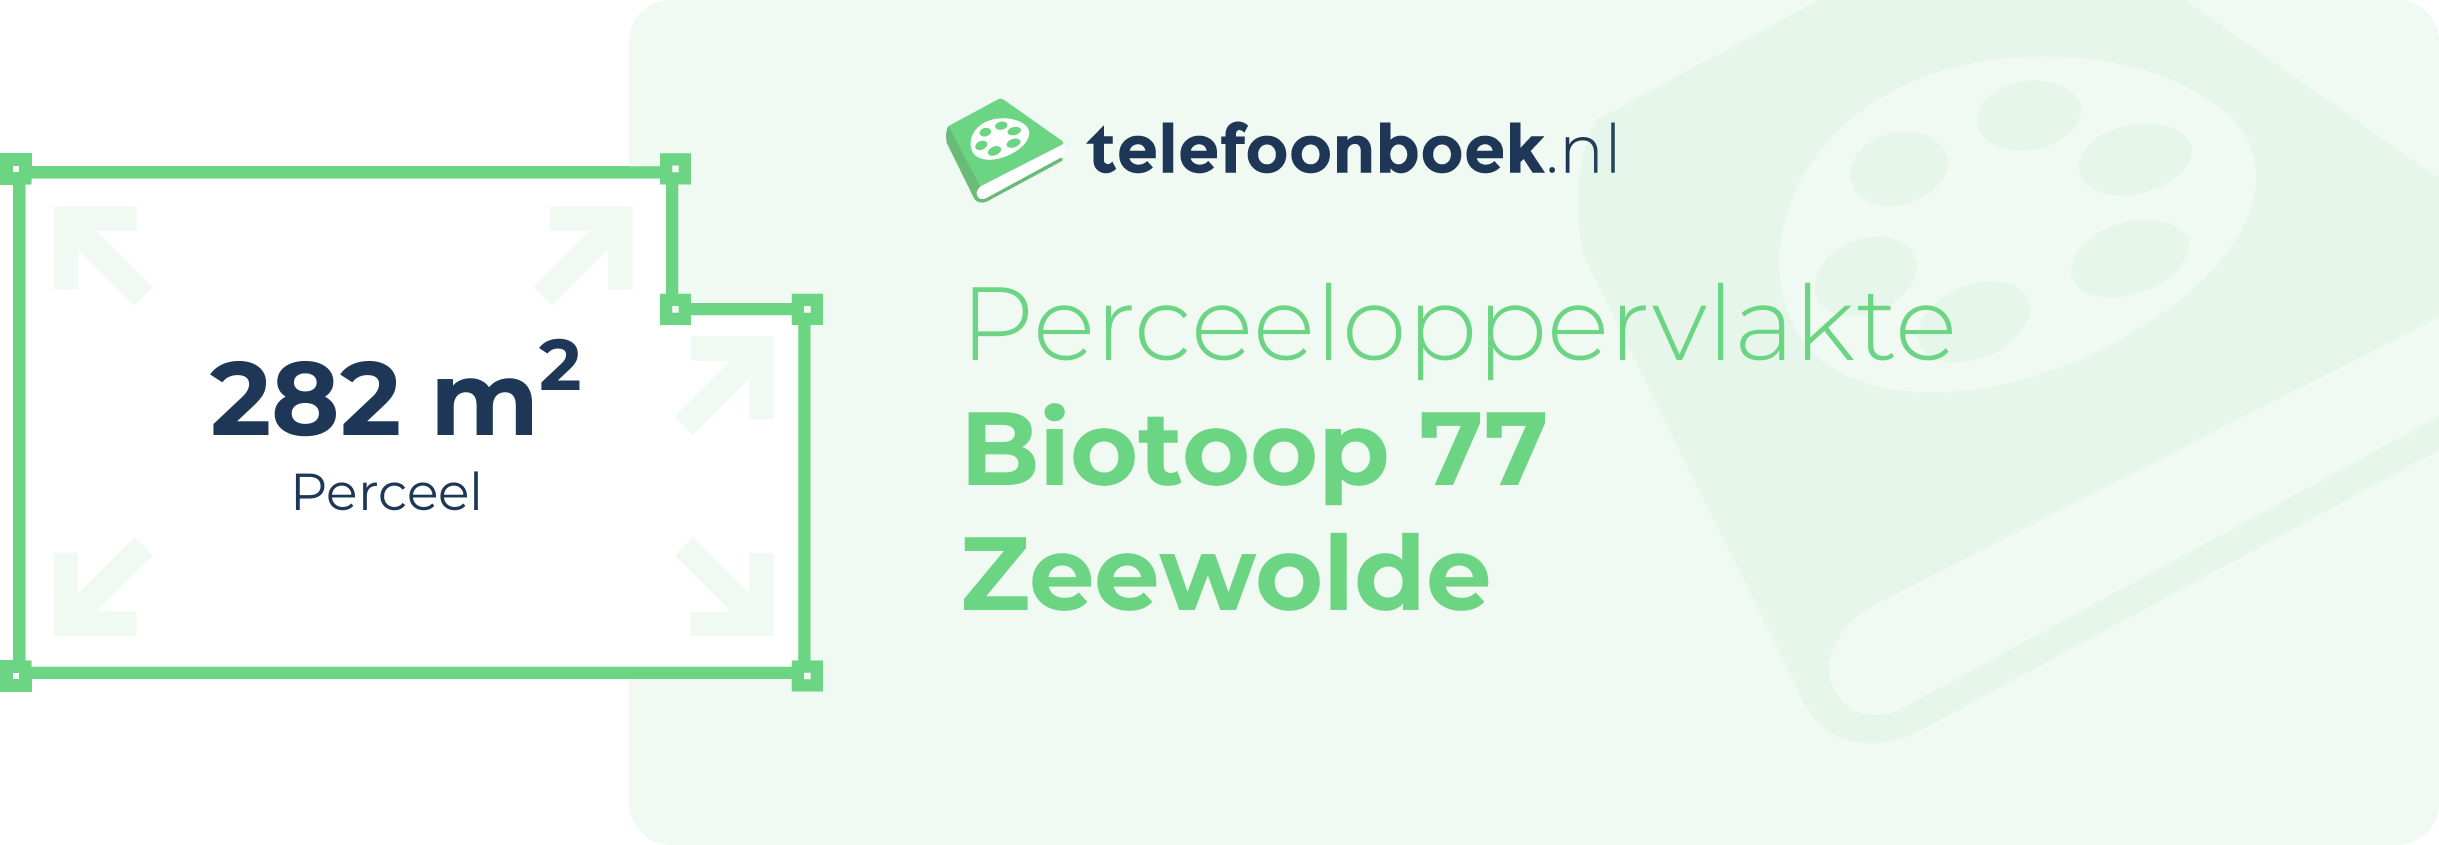 Perceeloppervlakte Biotoop 77 Zeewolde